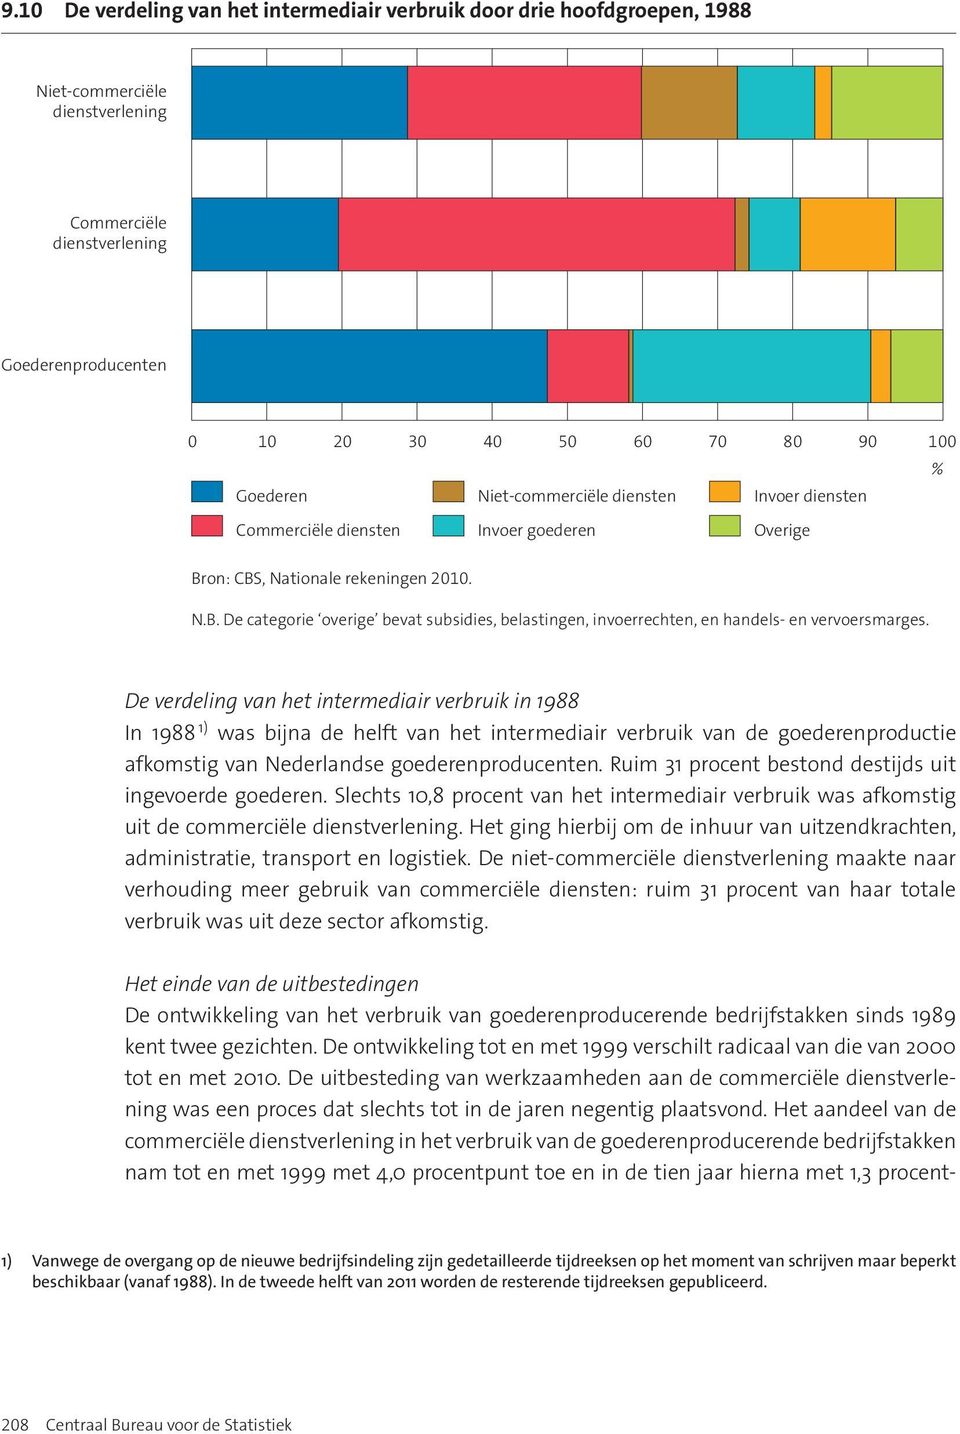 De verdeling van het intermediair verbruik in 1988 In 1988 1) was bijna de helft van het intermediair verbruik van de goederenproductie afkomstig van Nederlandse goederenproducenten.